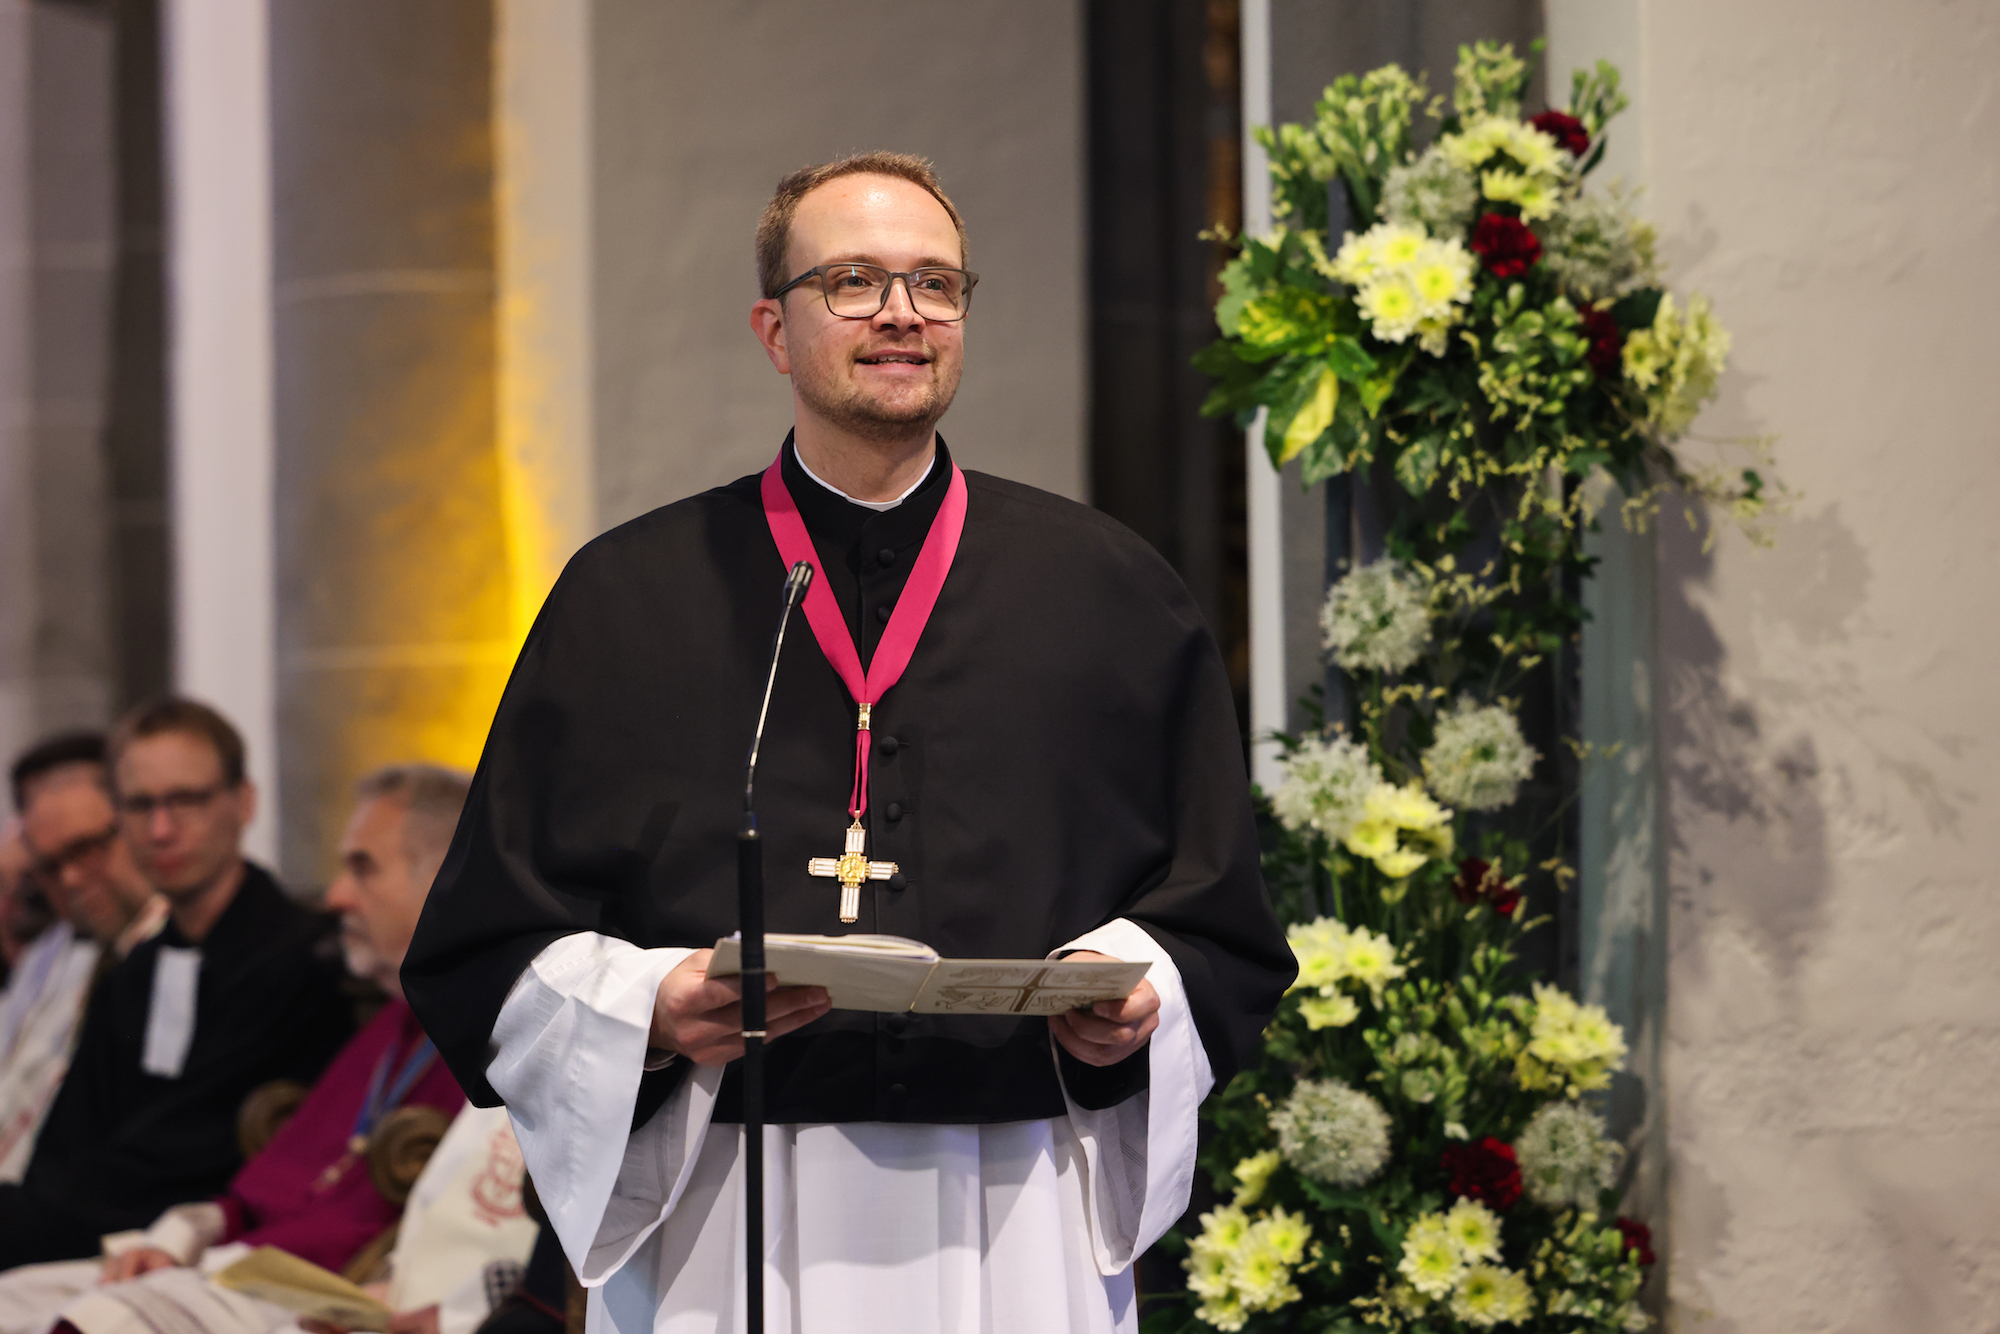 Wallfahrtsleiter Propst Andreas Möhlig ist froh, in der wiedereröffneten Kirche feiern zu können. (c) Bistum Aachen/Andreas Steindl